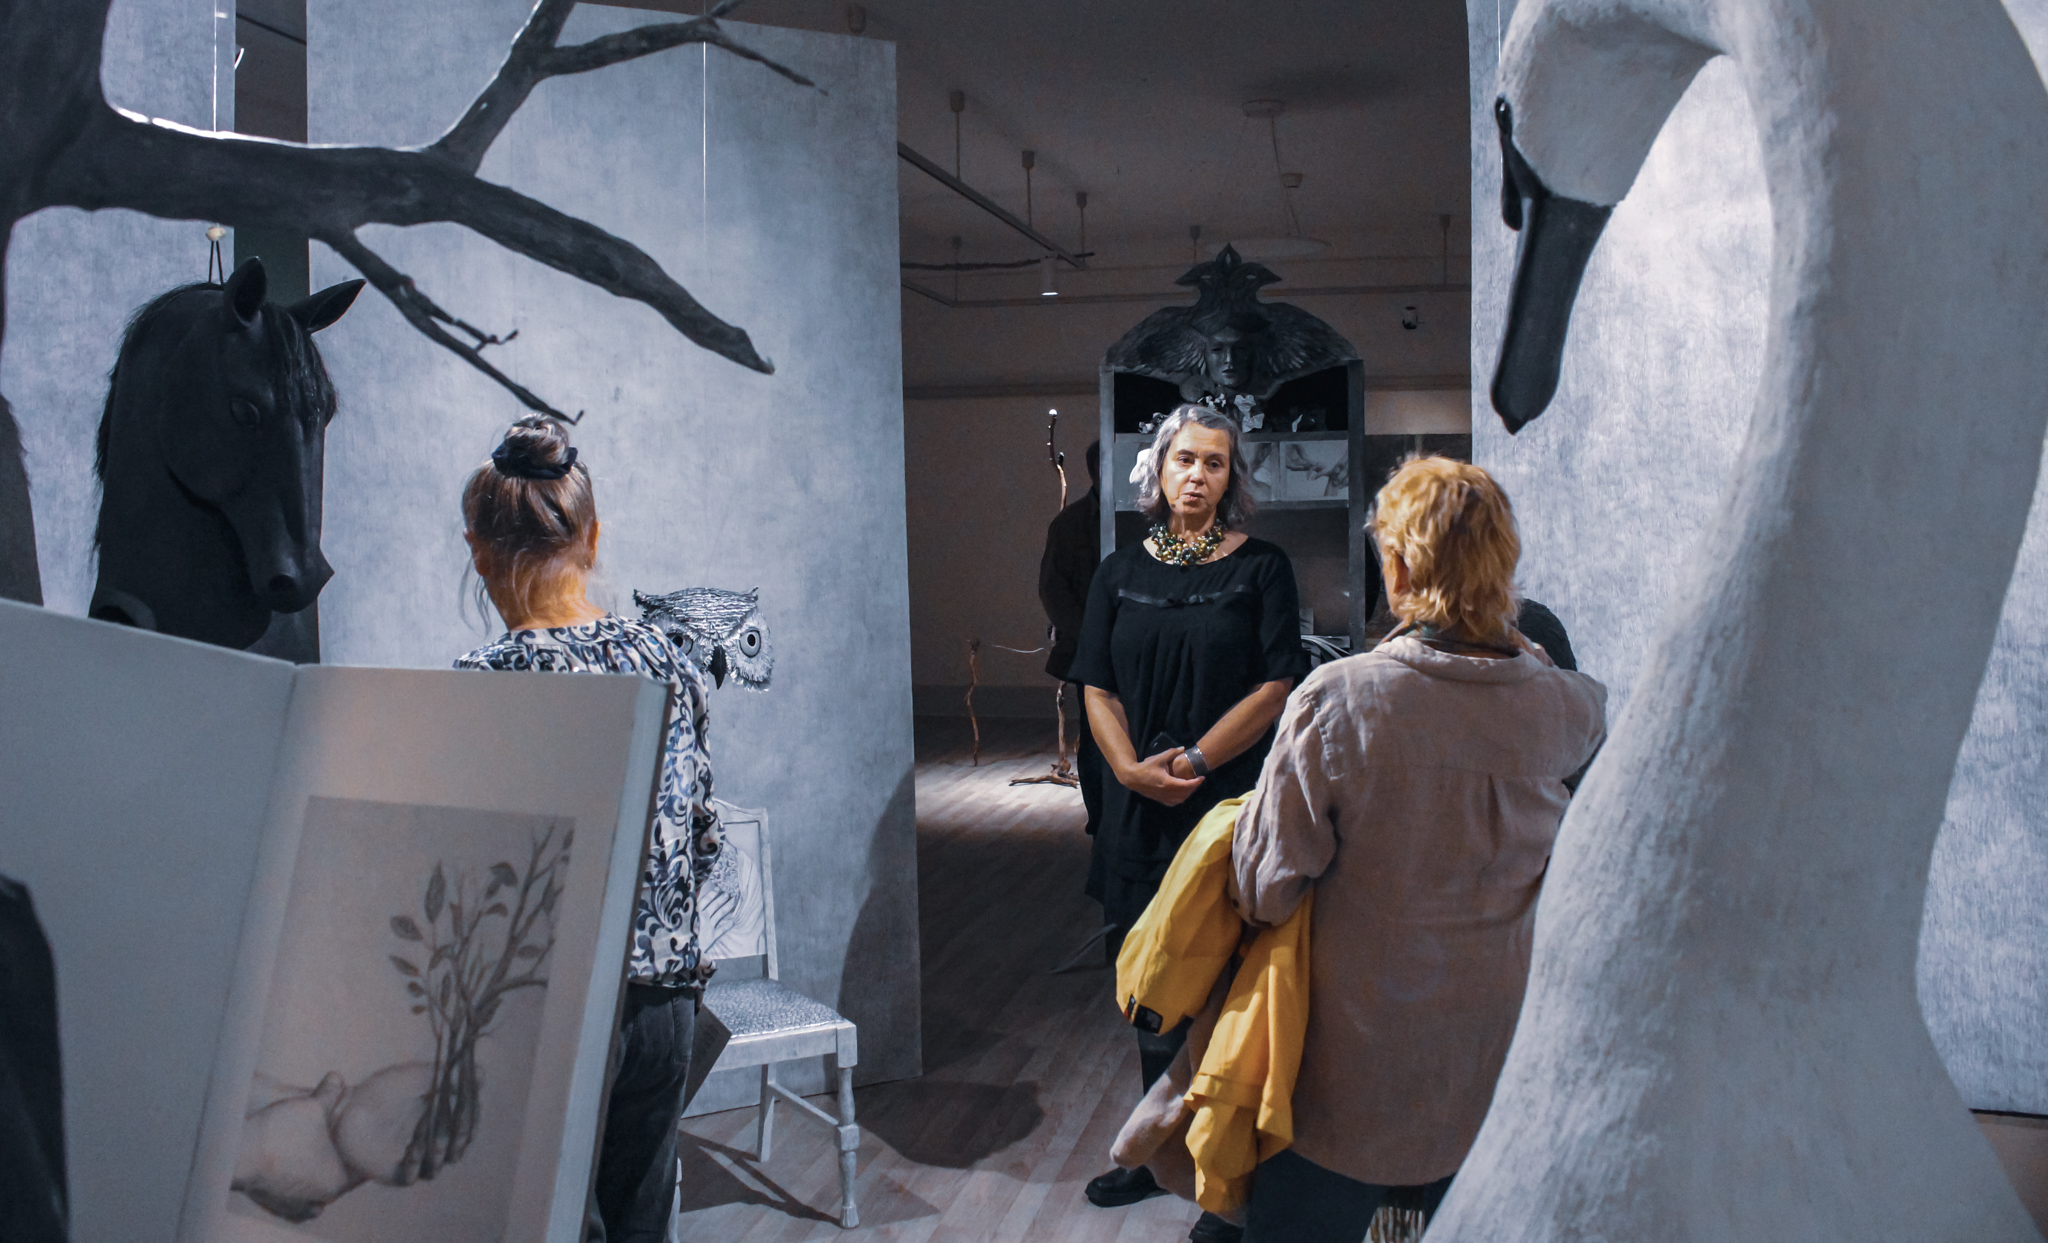 Visning i konsthallen. Besökare får berättat för sig om Vanna Bowles installation. Fåglar och hästhuvuden i gråa toner syns i bild.